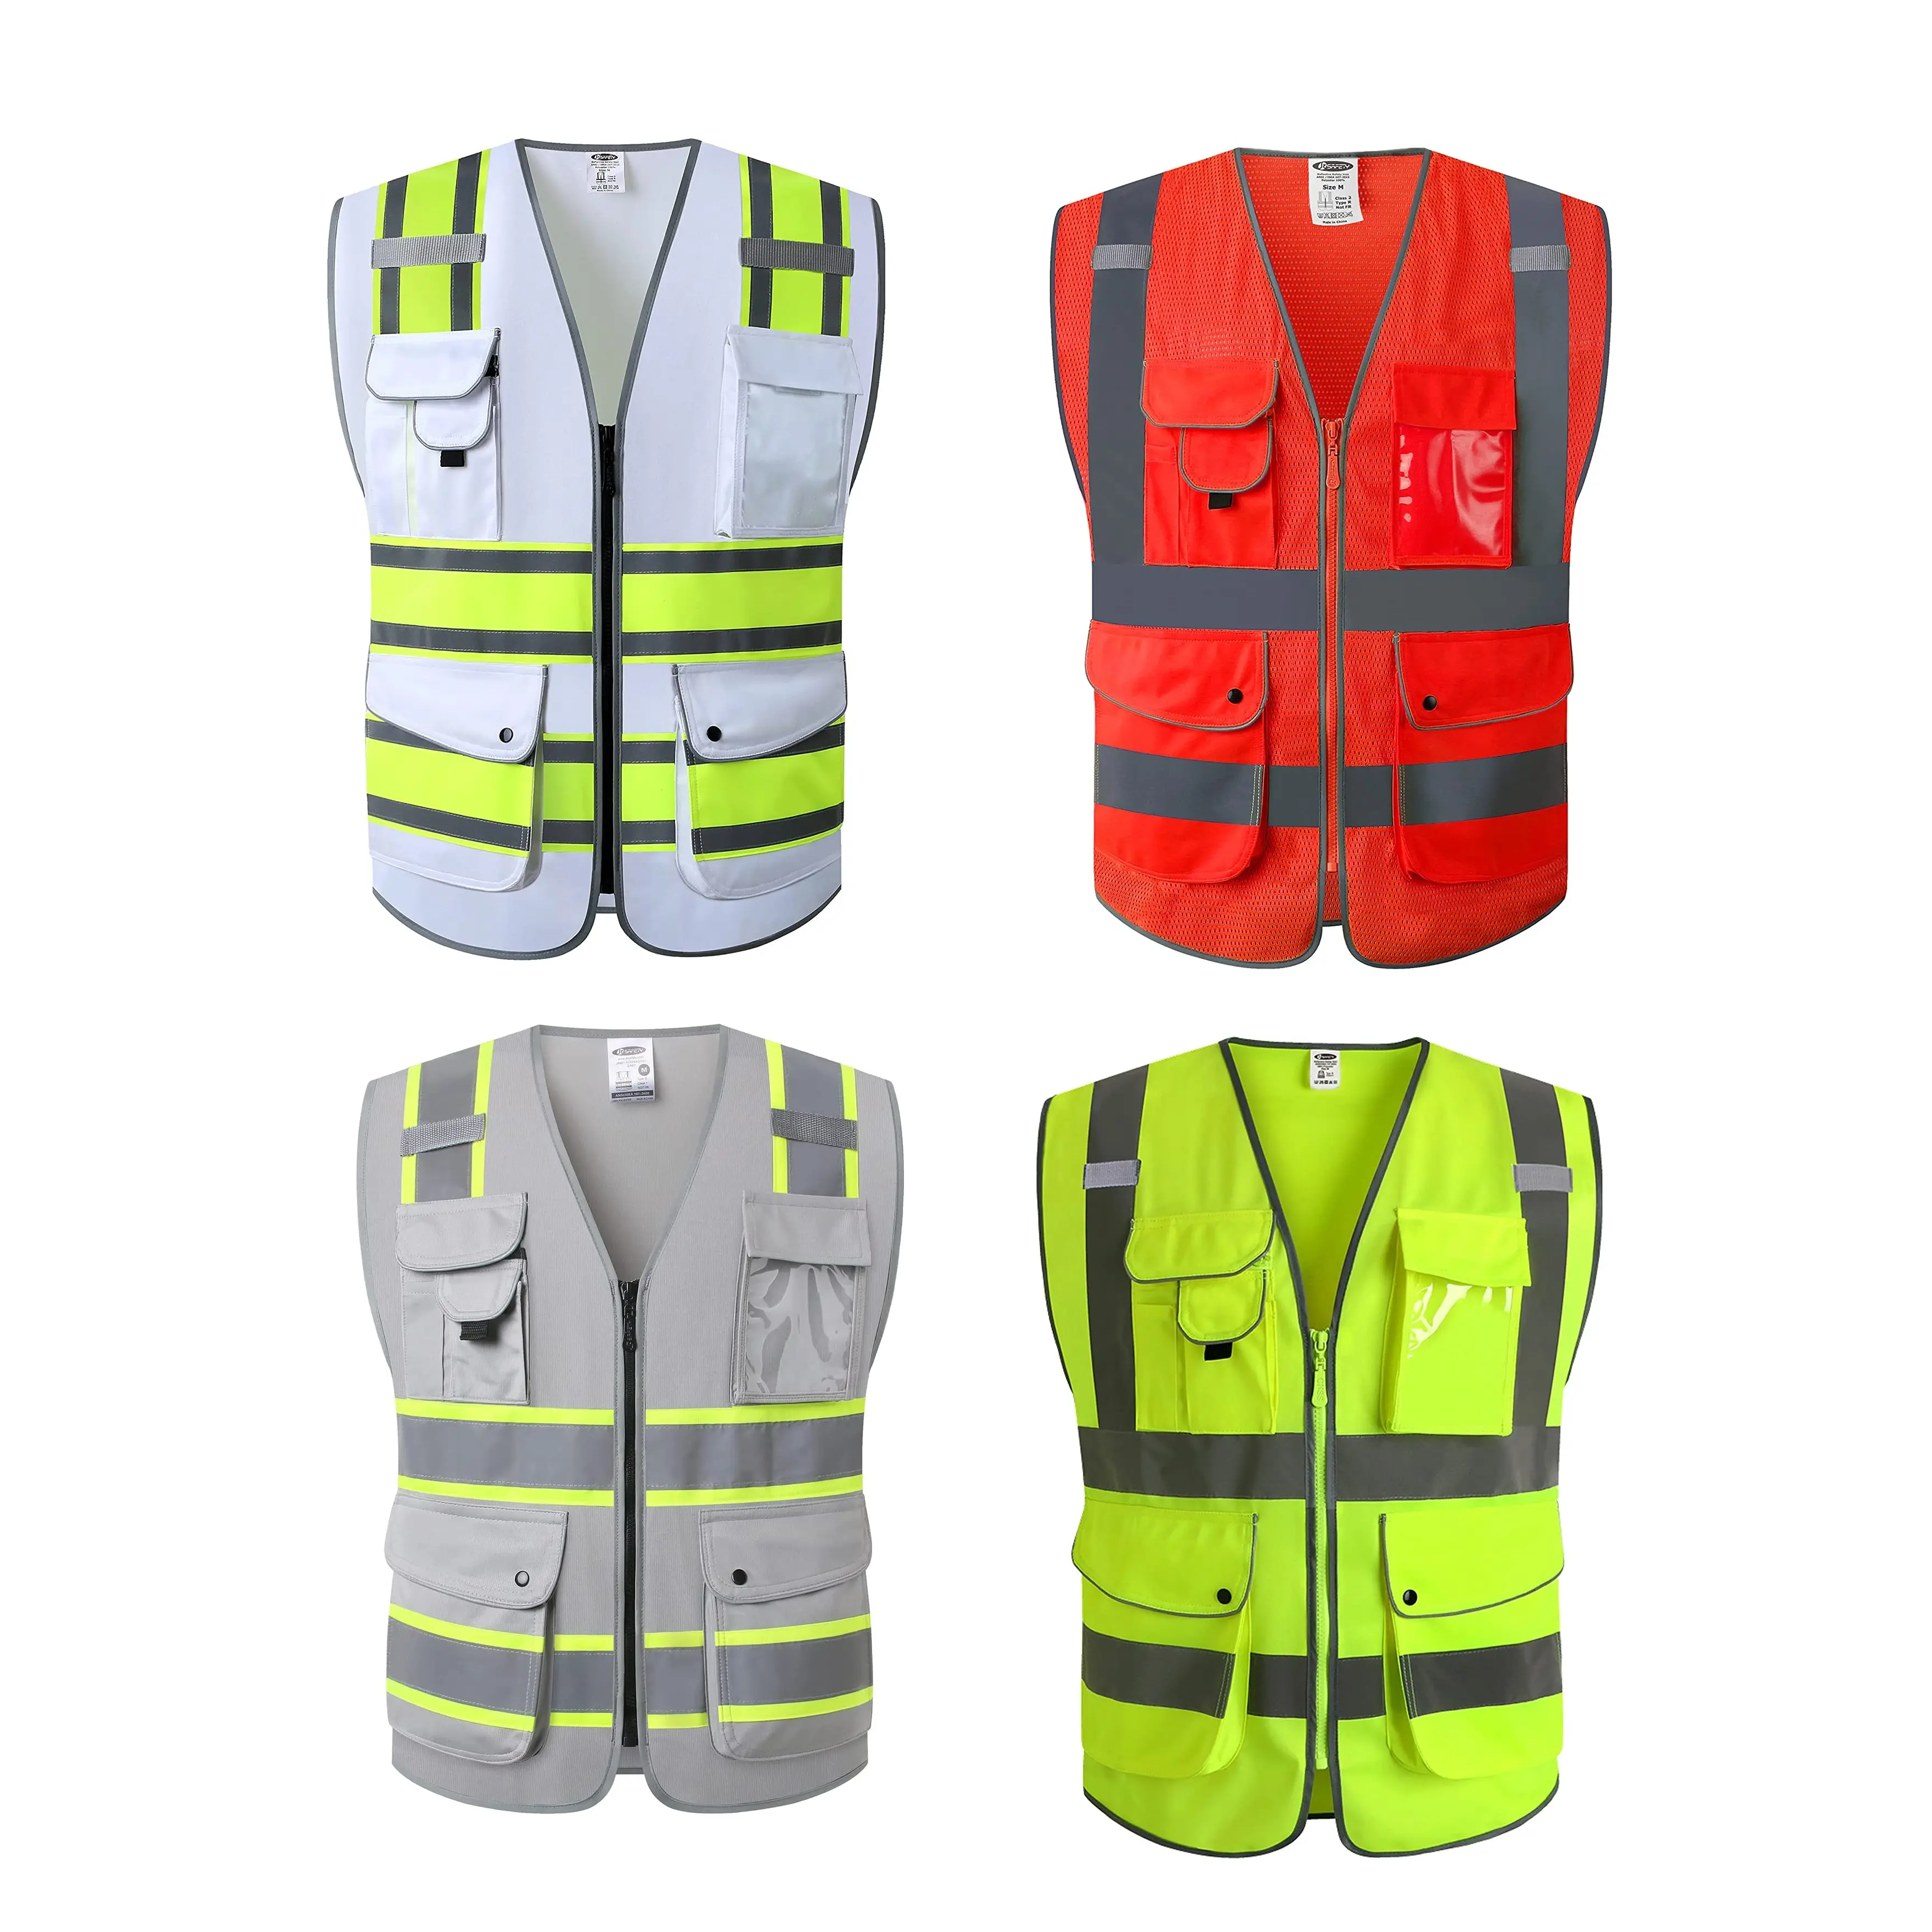 Vente d'usine en gros vestes LED à haute visibilité avec poches en filet pour la construction d'aéroports vestes réfléchissantes taille unique gilets de sécurité avec logo